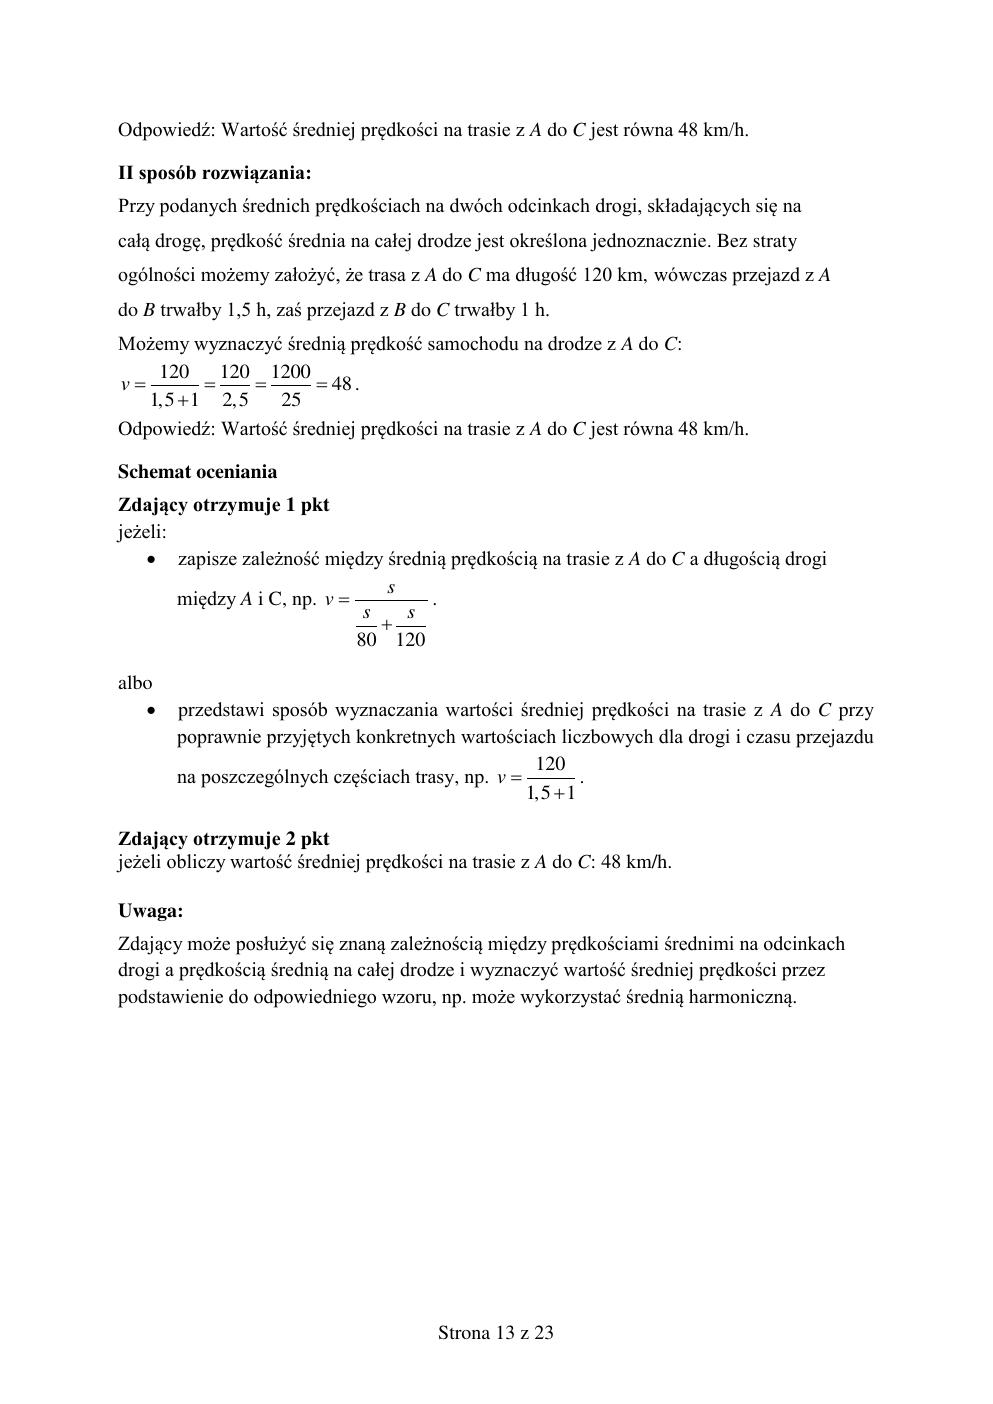 odpowiedzi - matematyka podstawowy - matura 2015 próbna-13